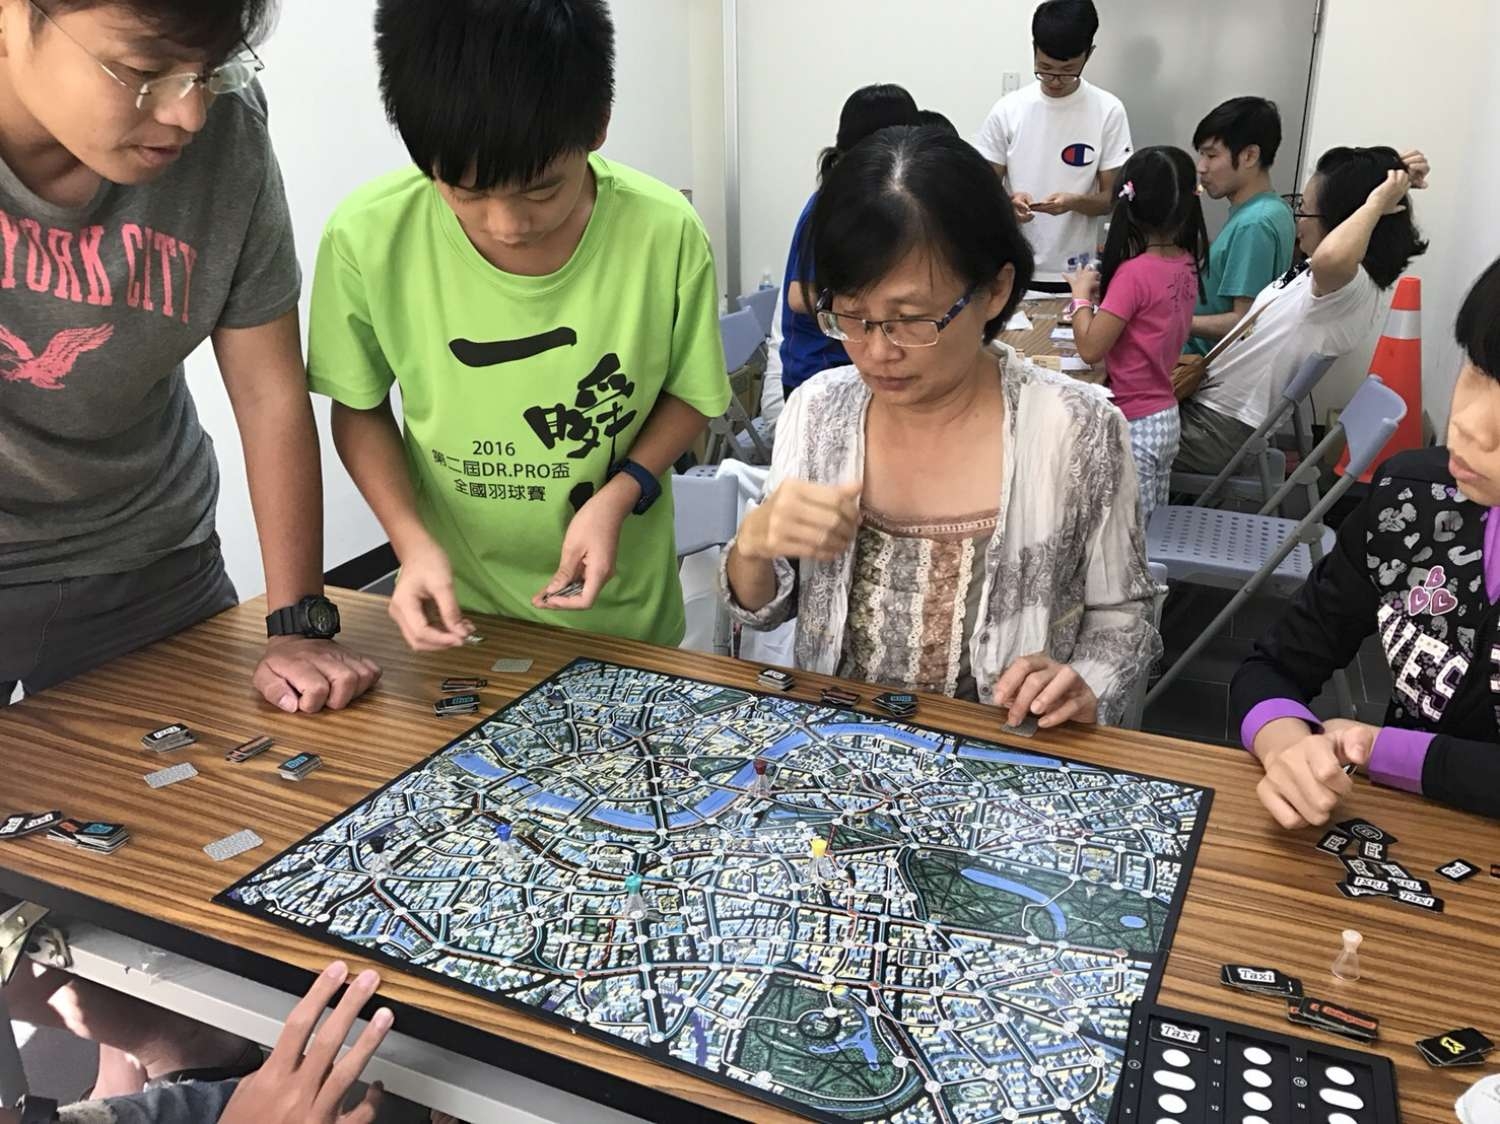 竹警青春專案新想法 自創桌遊教犯罪防制